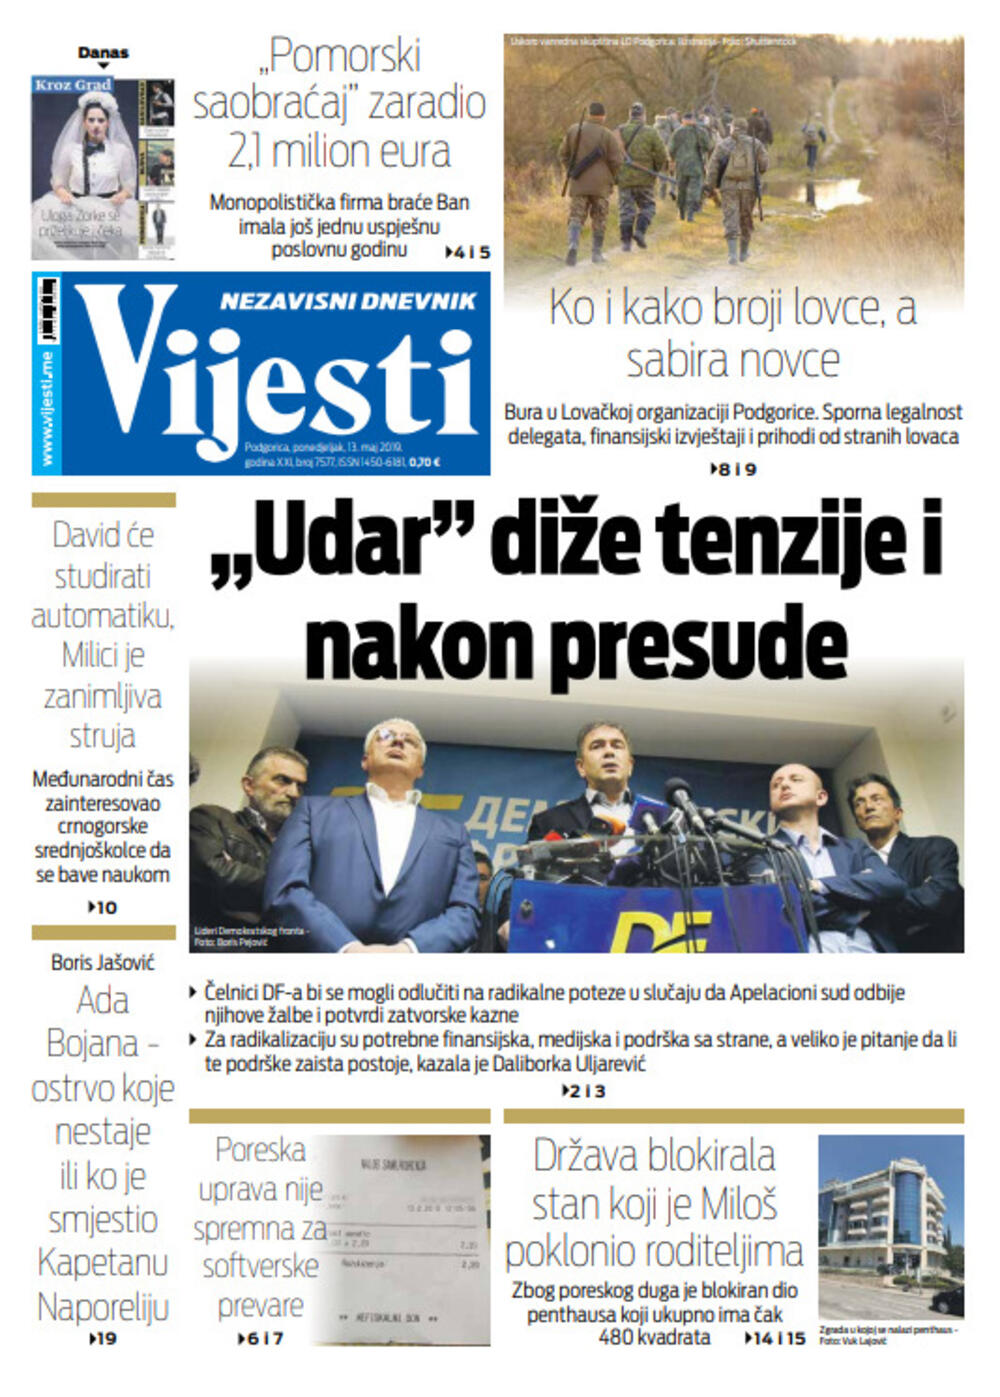 Naslovna strana "Vijesti" za 13. maj, Foto: "Vijesti"